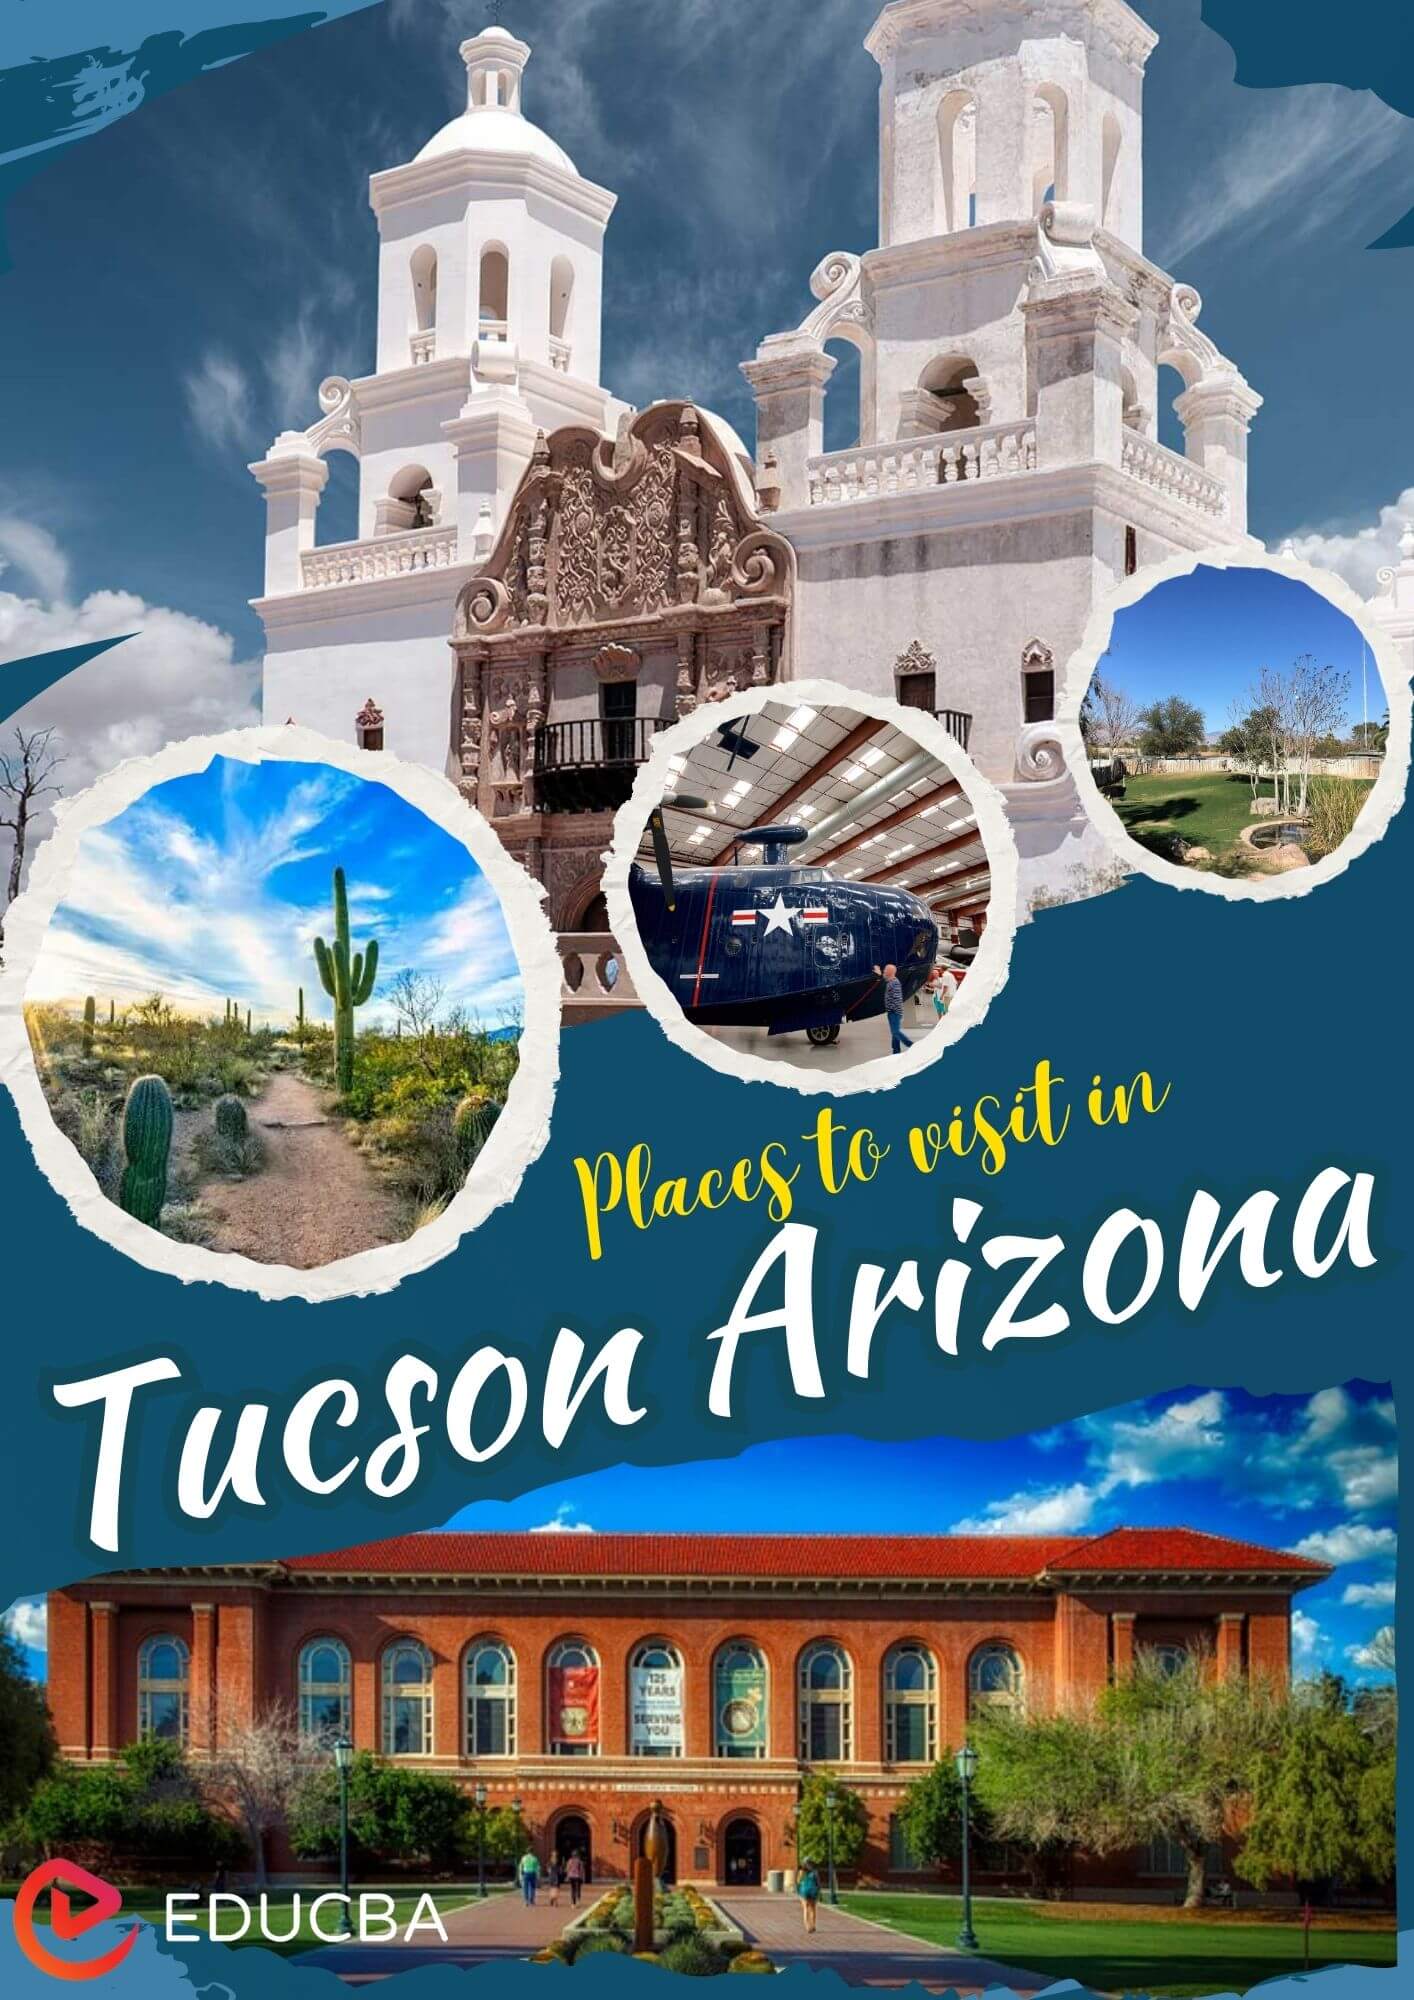 Places to visit in Tucson Arizona